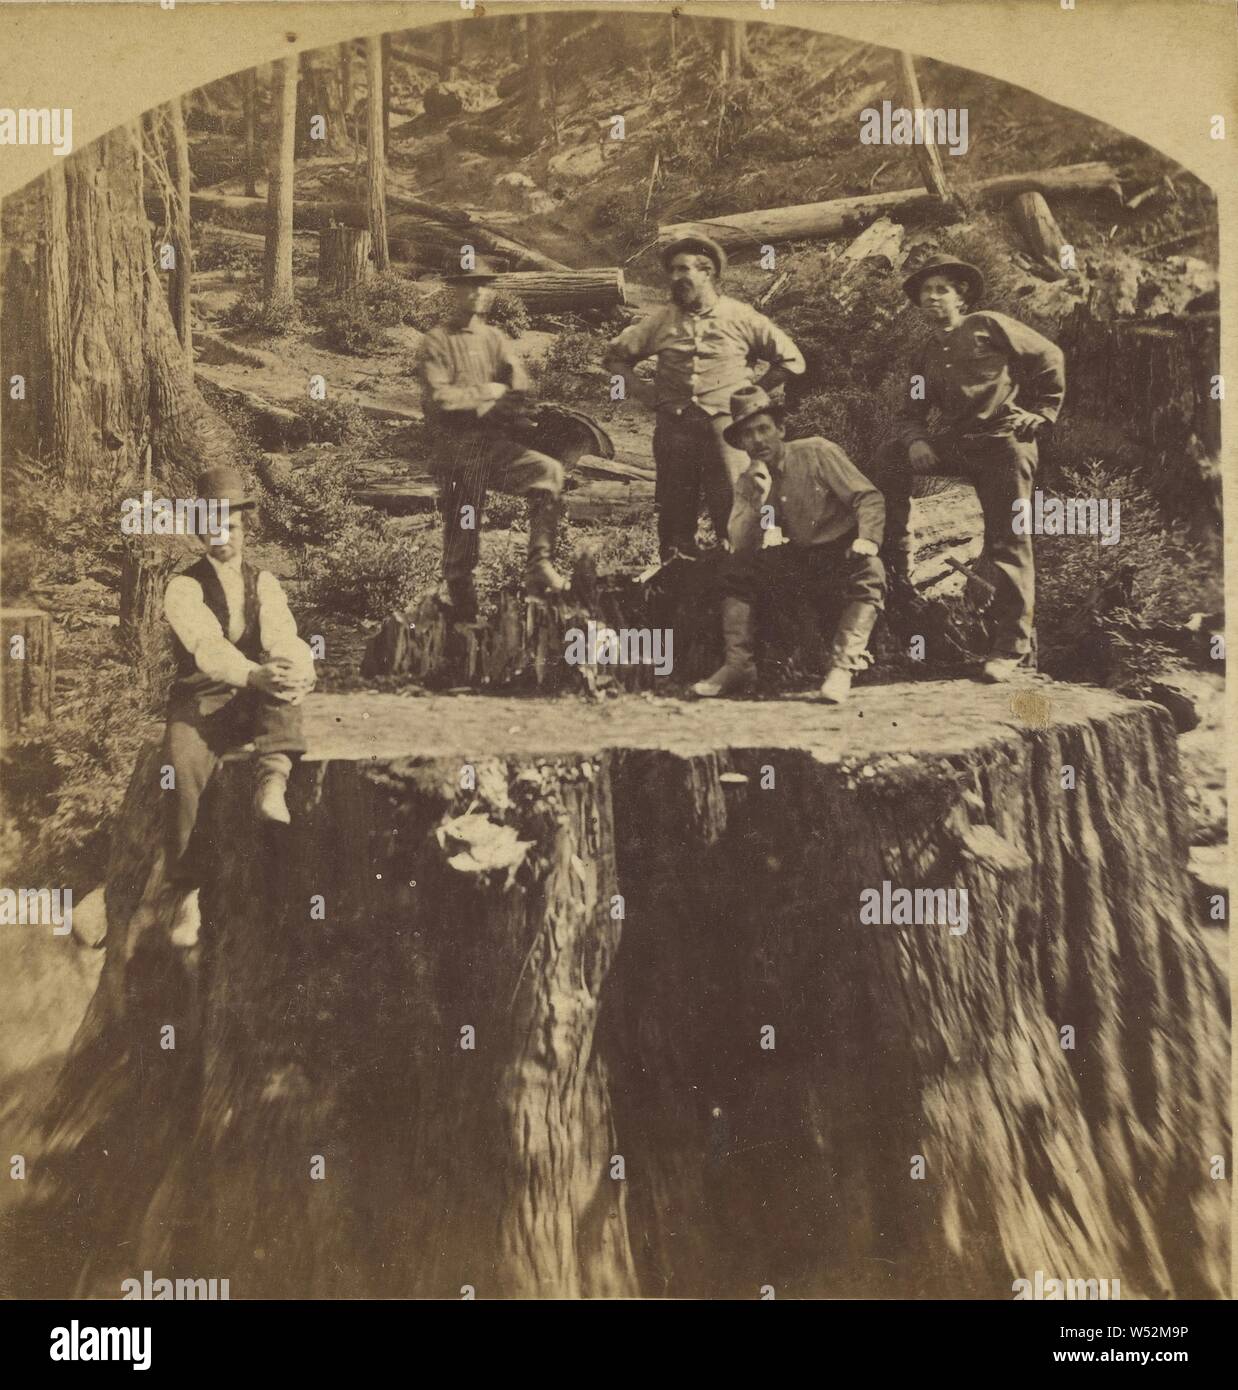 Stump, 12 pieds 6 pouces, Jarvis., pas de bouilloire, cuisine américaine, vers 1865, à l'albumine argentique Banque D'Images